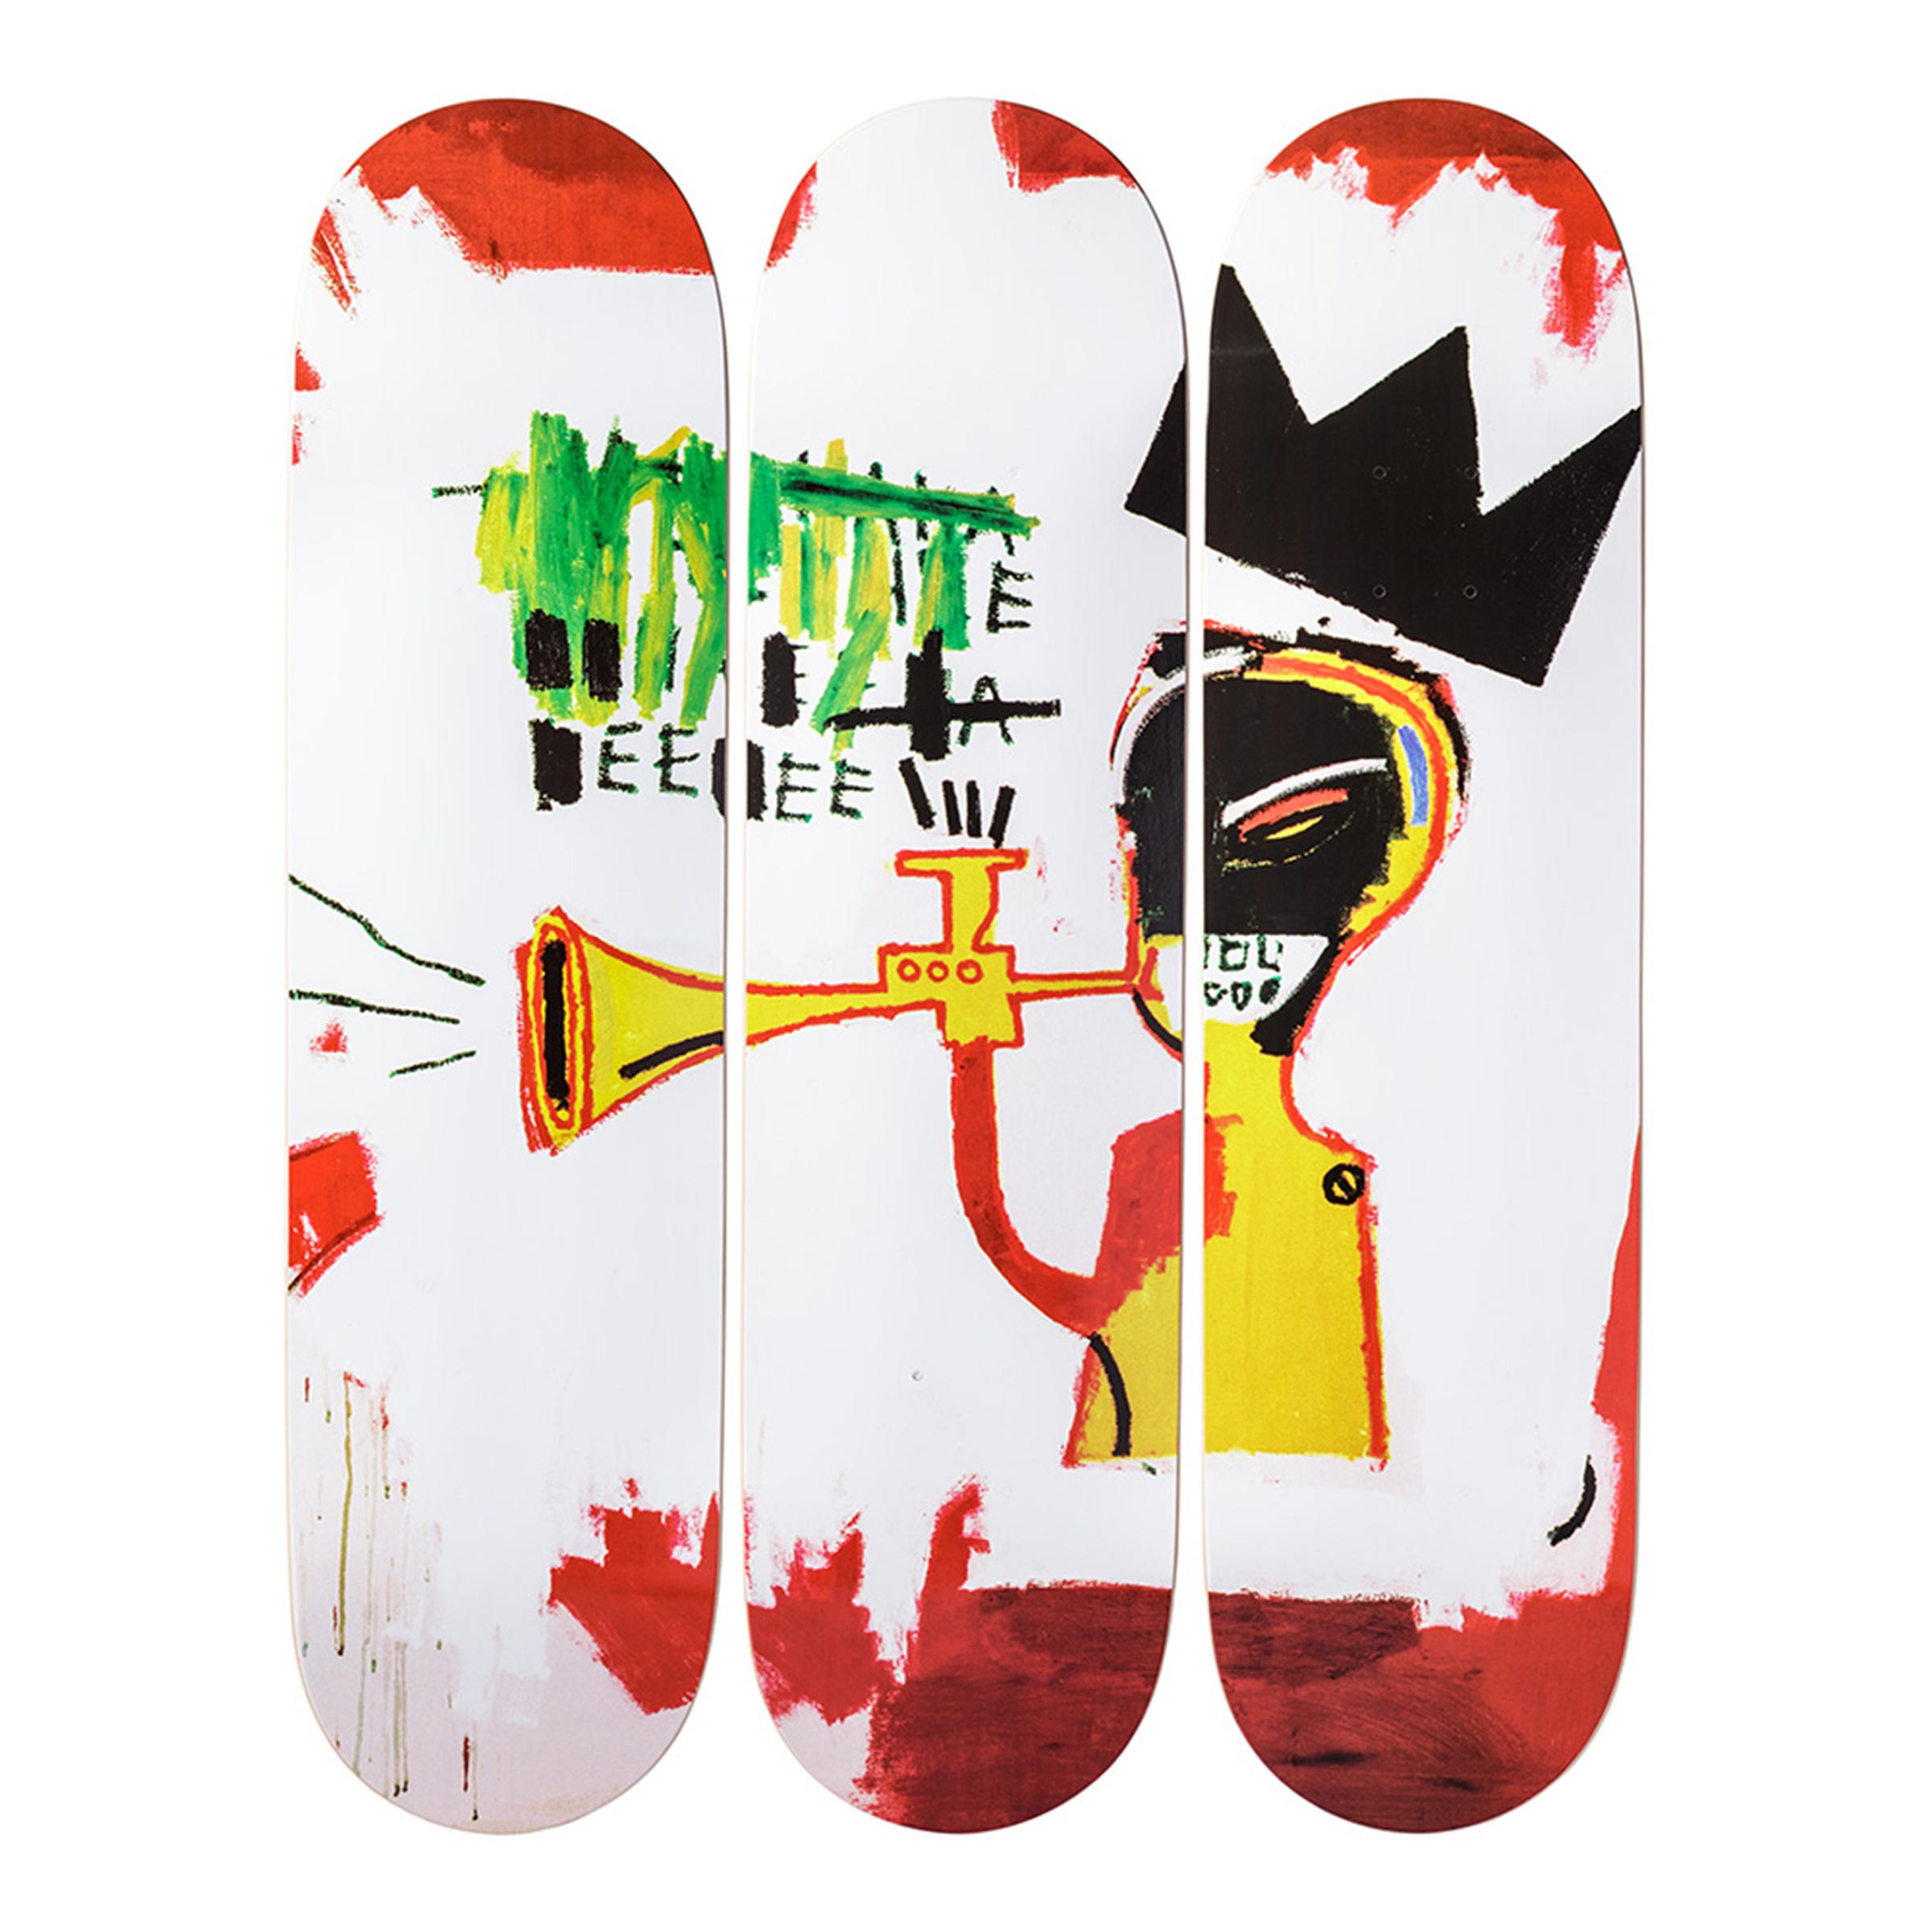 The Skateroom x Succession de Jean-Michel Basquiat
Trumpet Skateboard Decks, ensemble de trois œuvres, 2019
Sérigraphie sur bois d'érable canadien 7 plis.
31 1/2 × 8 in  80 × 20.3 cm
Edition ouverte 
Sous licence Artestar, New York